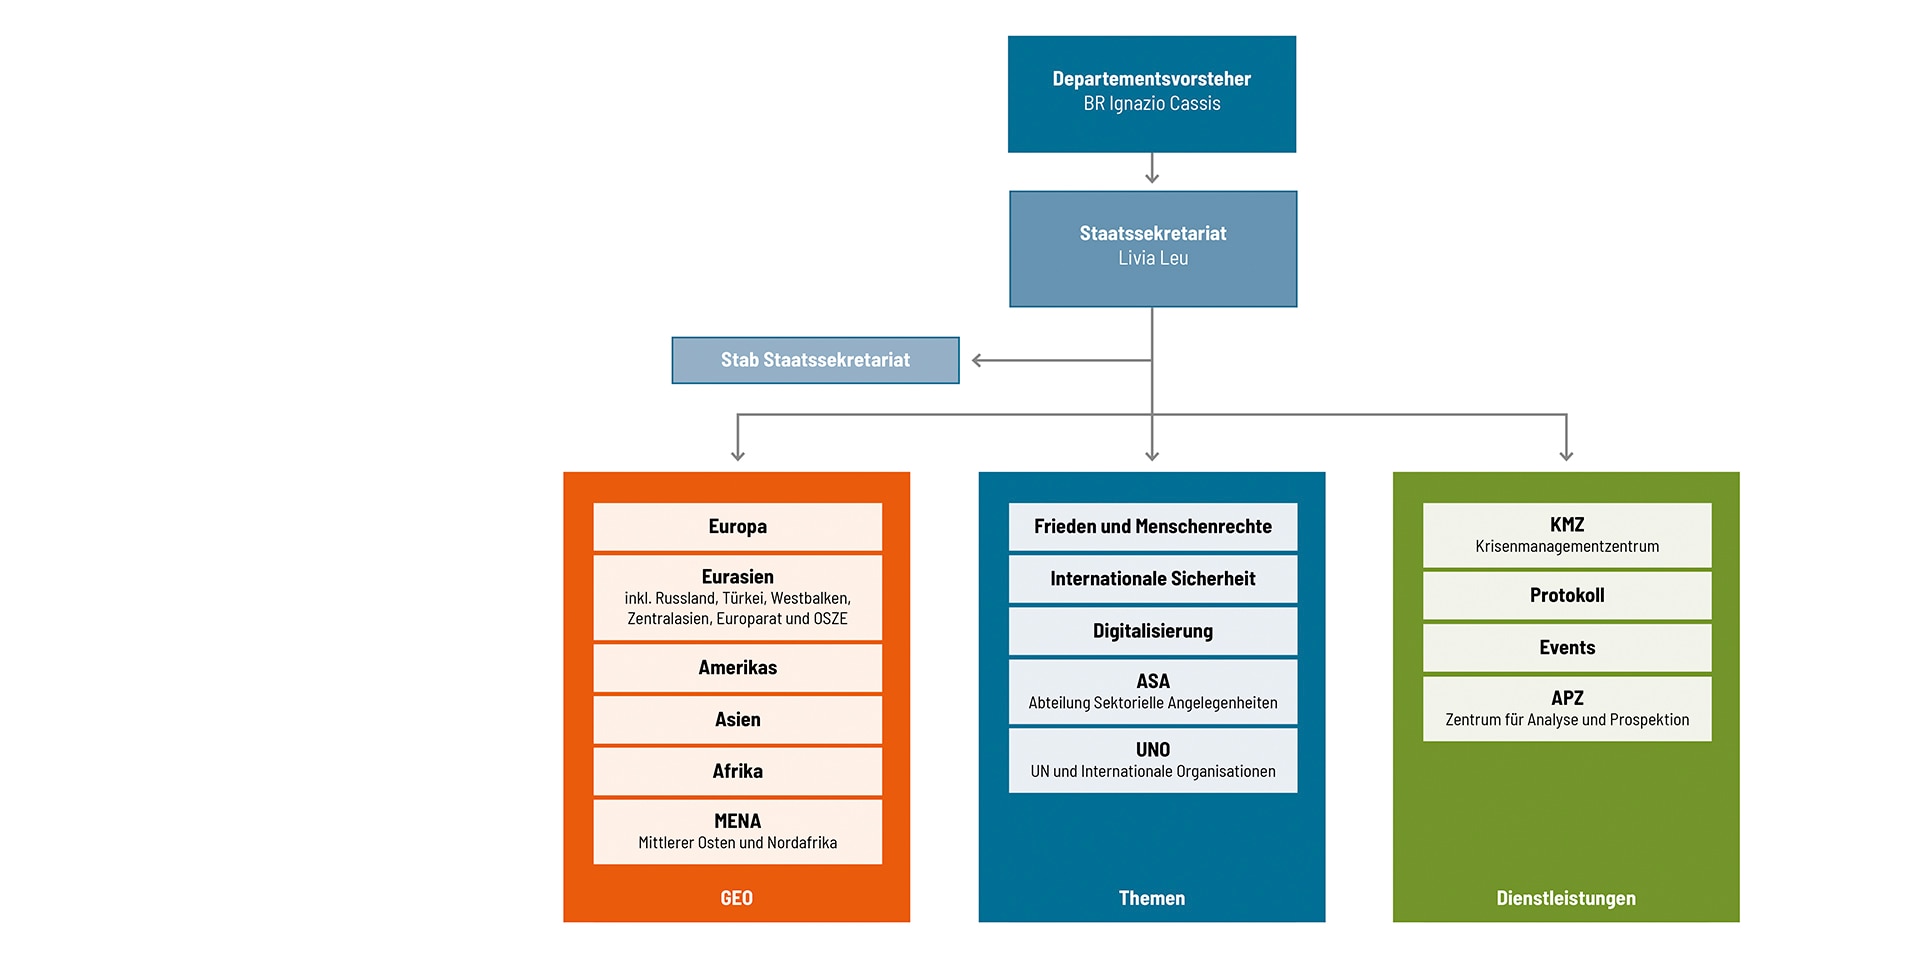 Presentazione grafica della struttura del DFAE a partire dal 2021.